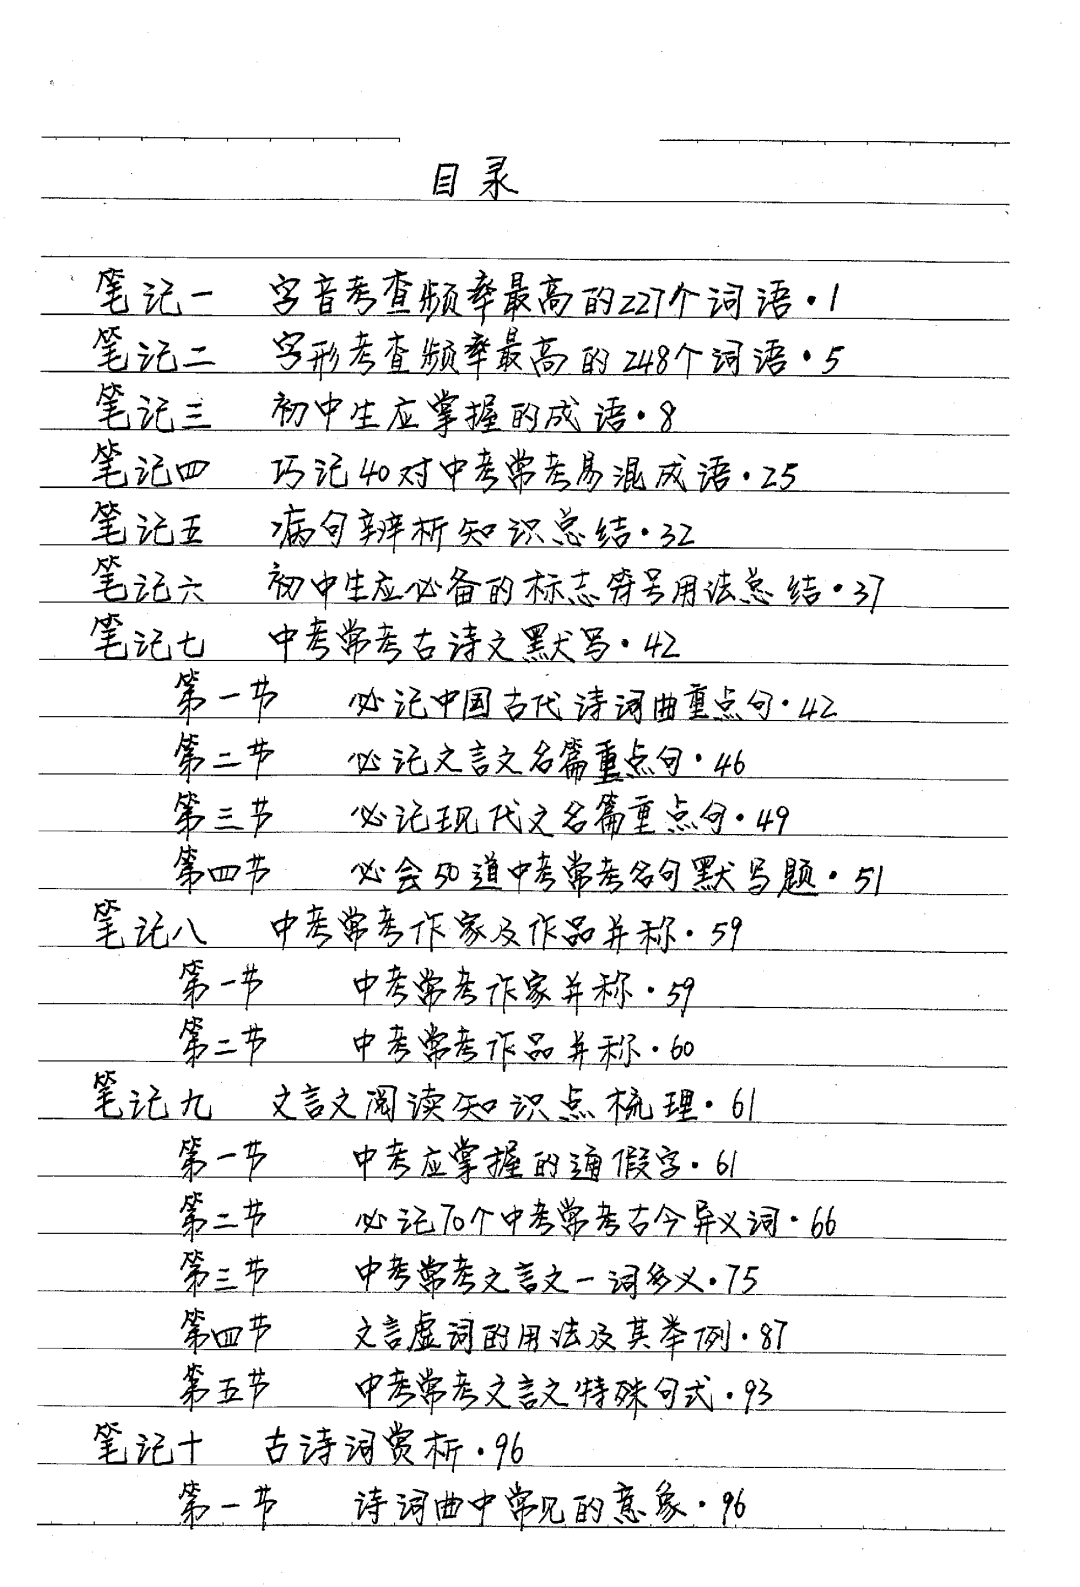 171页初中语文学霸手写笔记,跟着学你也能次次高分!_手机搜狐网